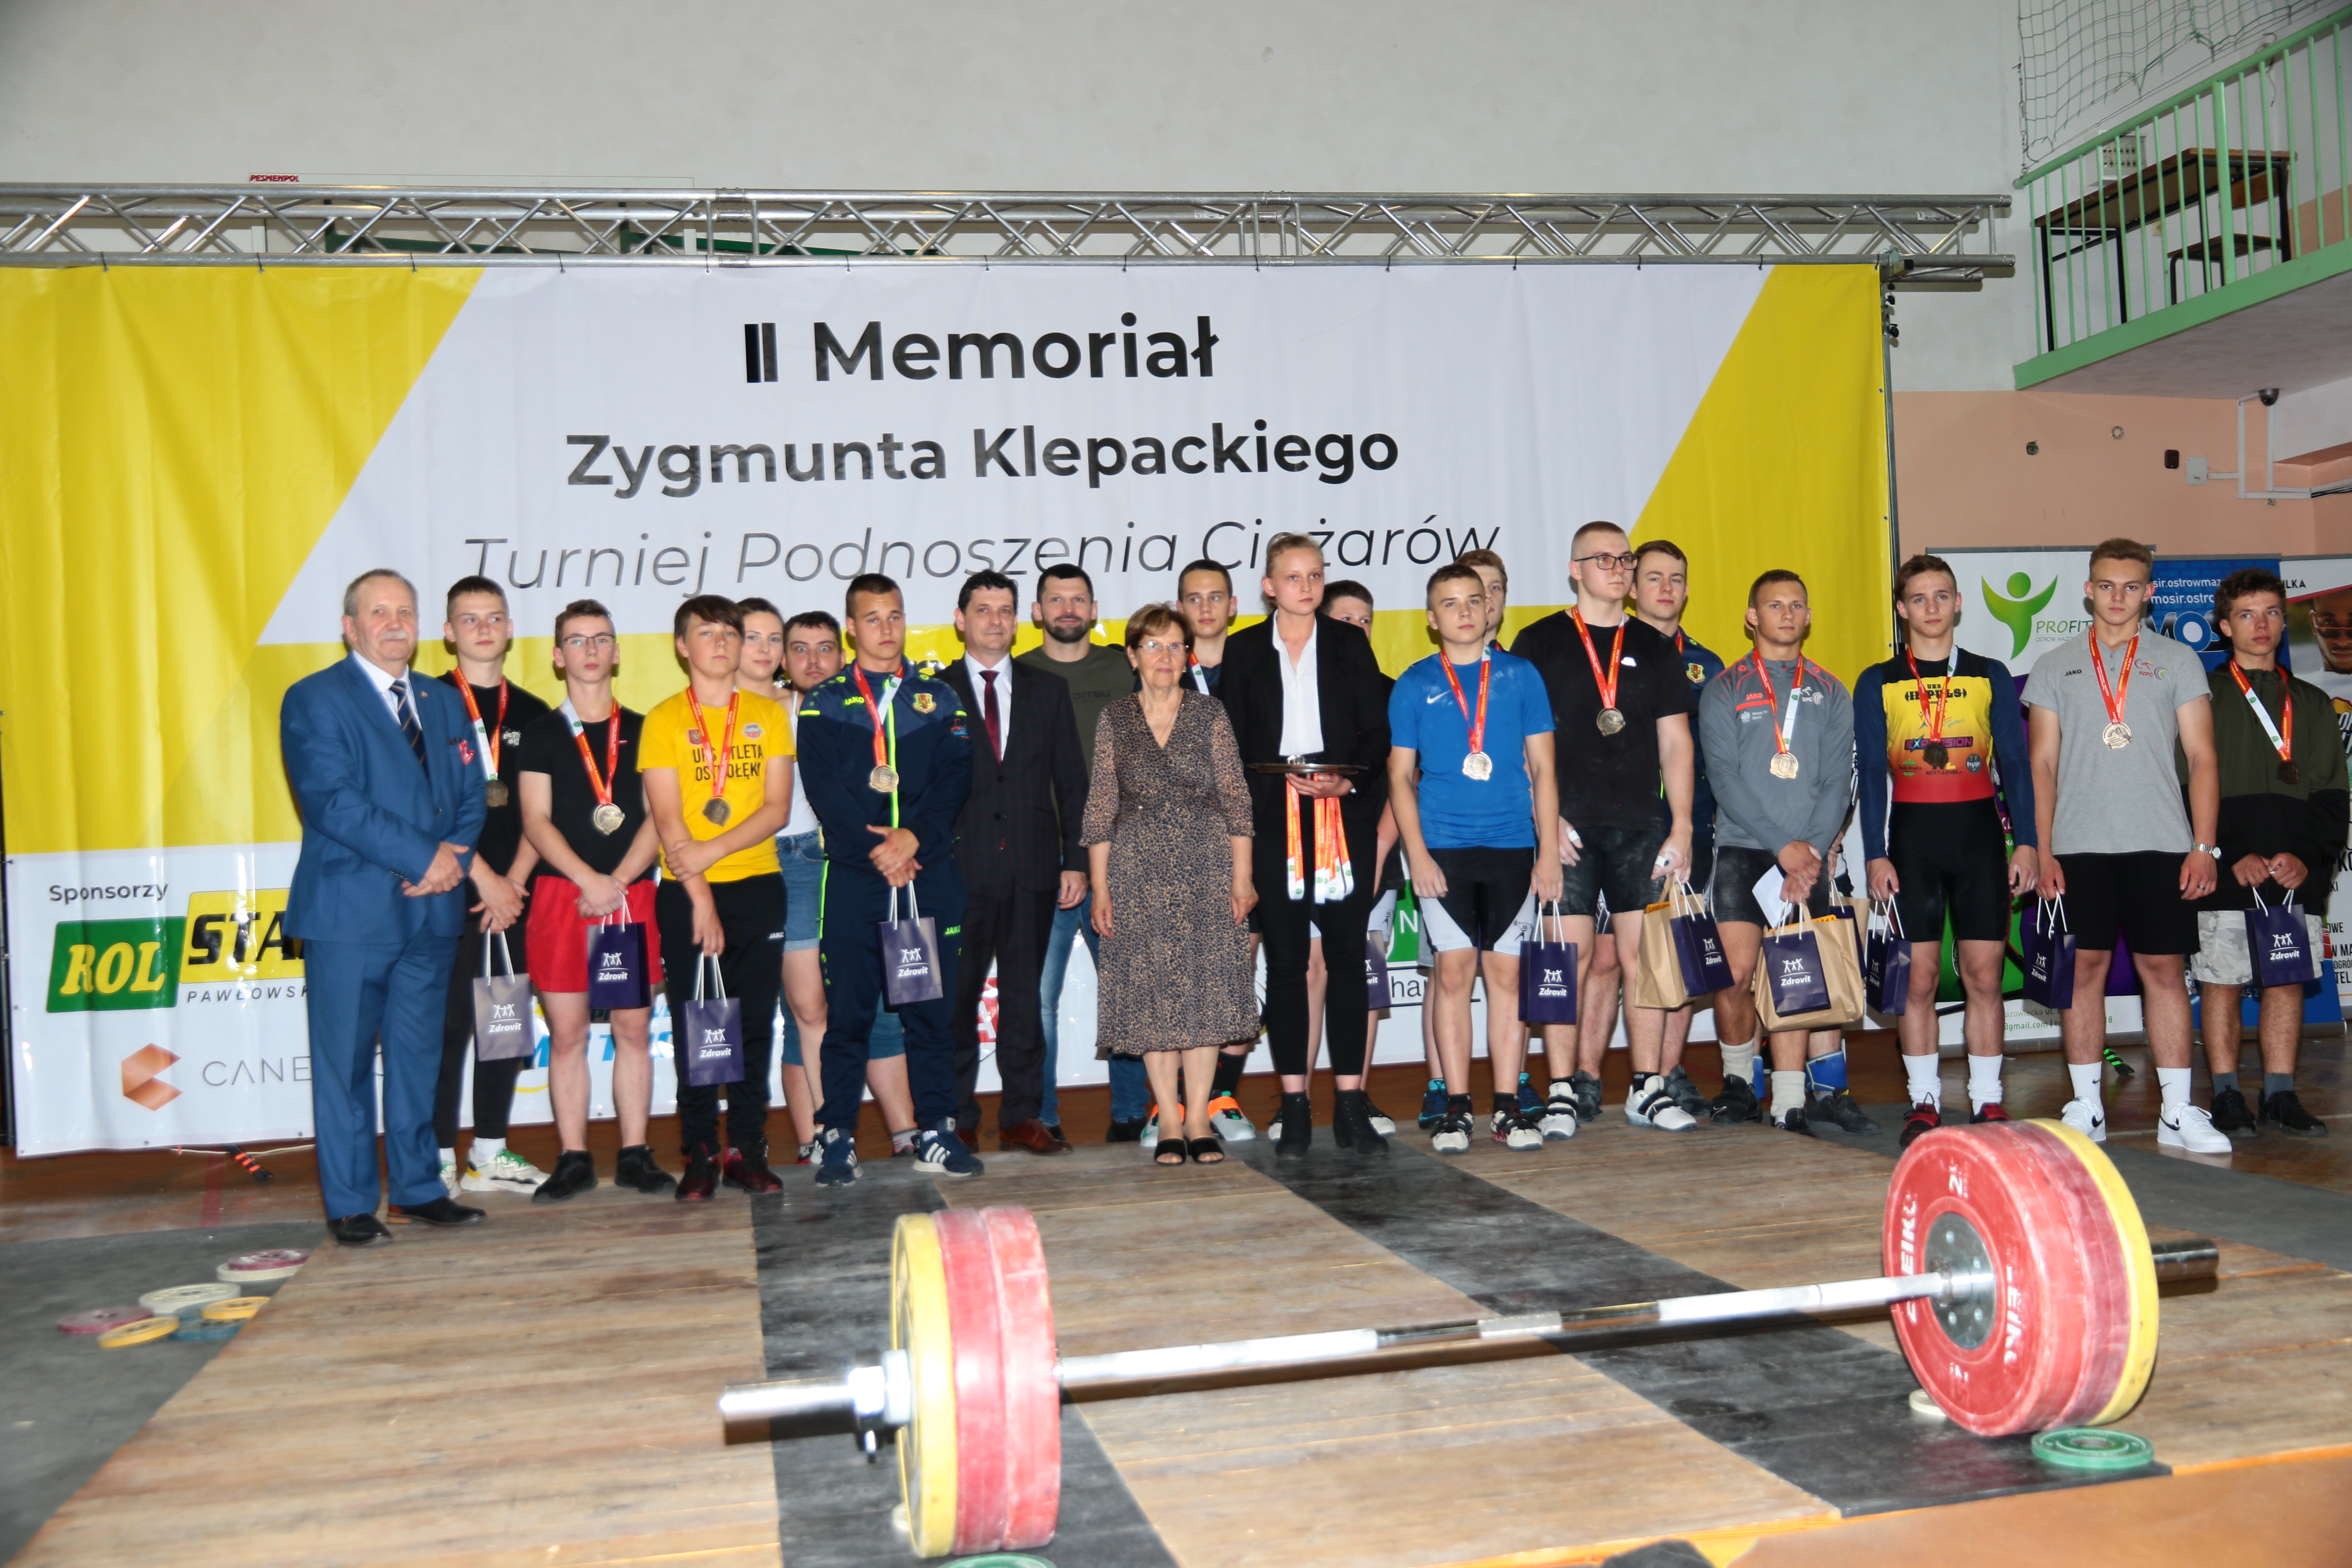 Grupa osób nagrodzonych na II Memoriale Zygmunta klepackiego, z medalami, dyplomami, sztanga lży na ziemi przed grupą